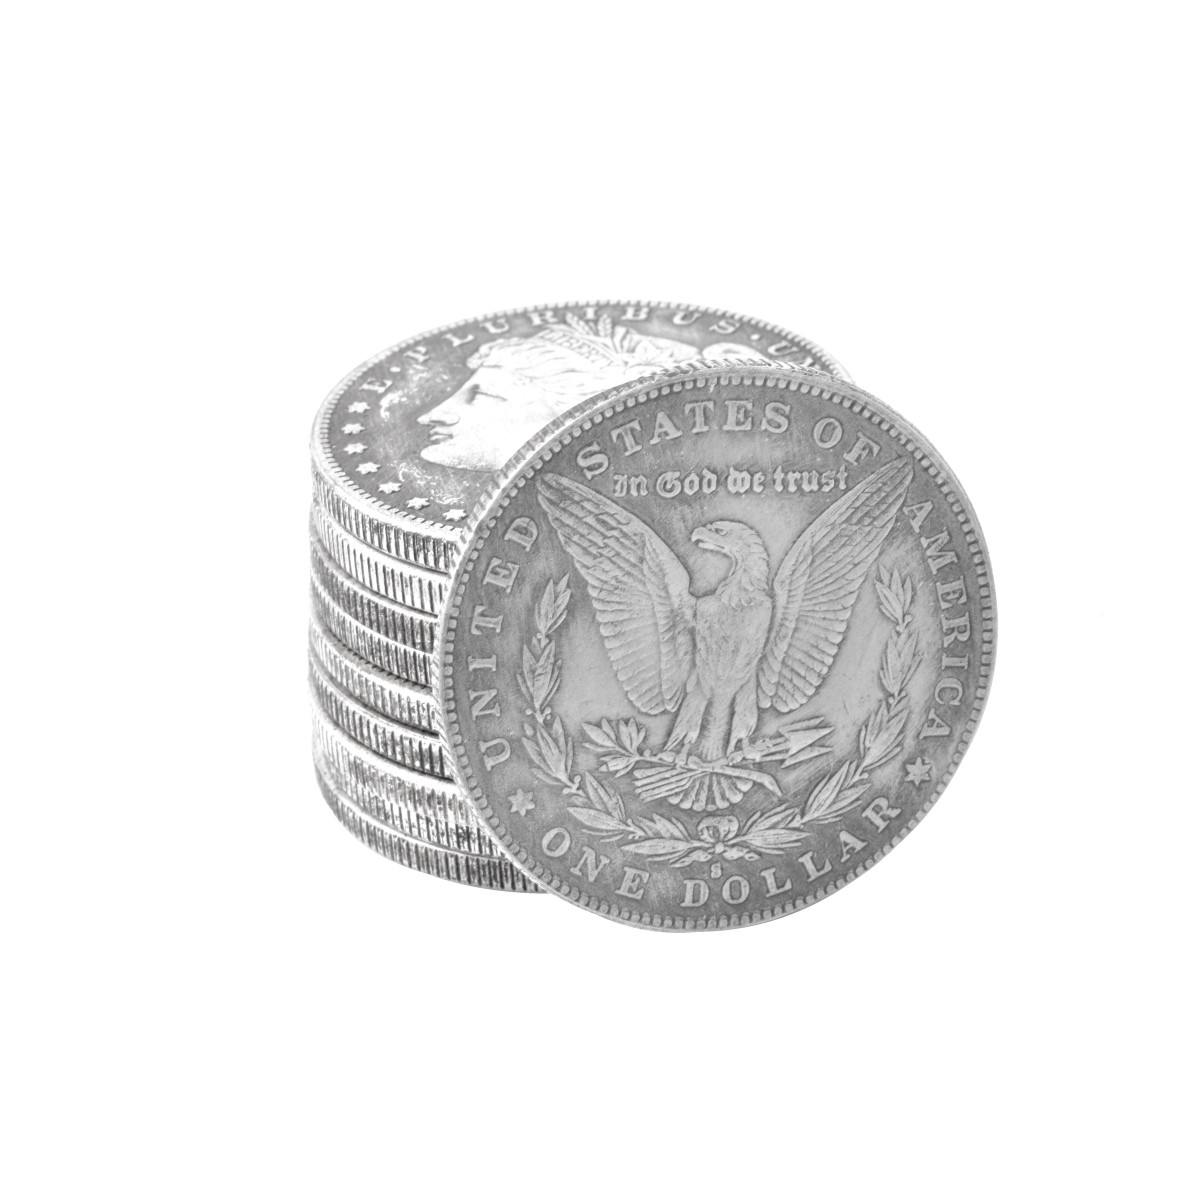 Ten US Morgan Silver Dollar Coins